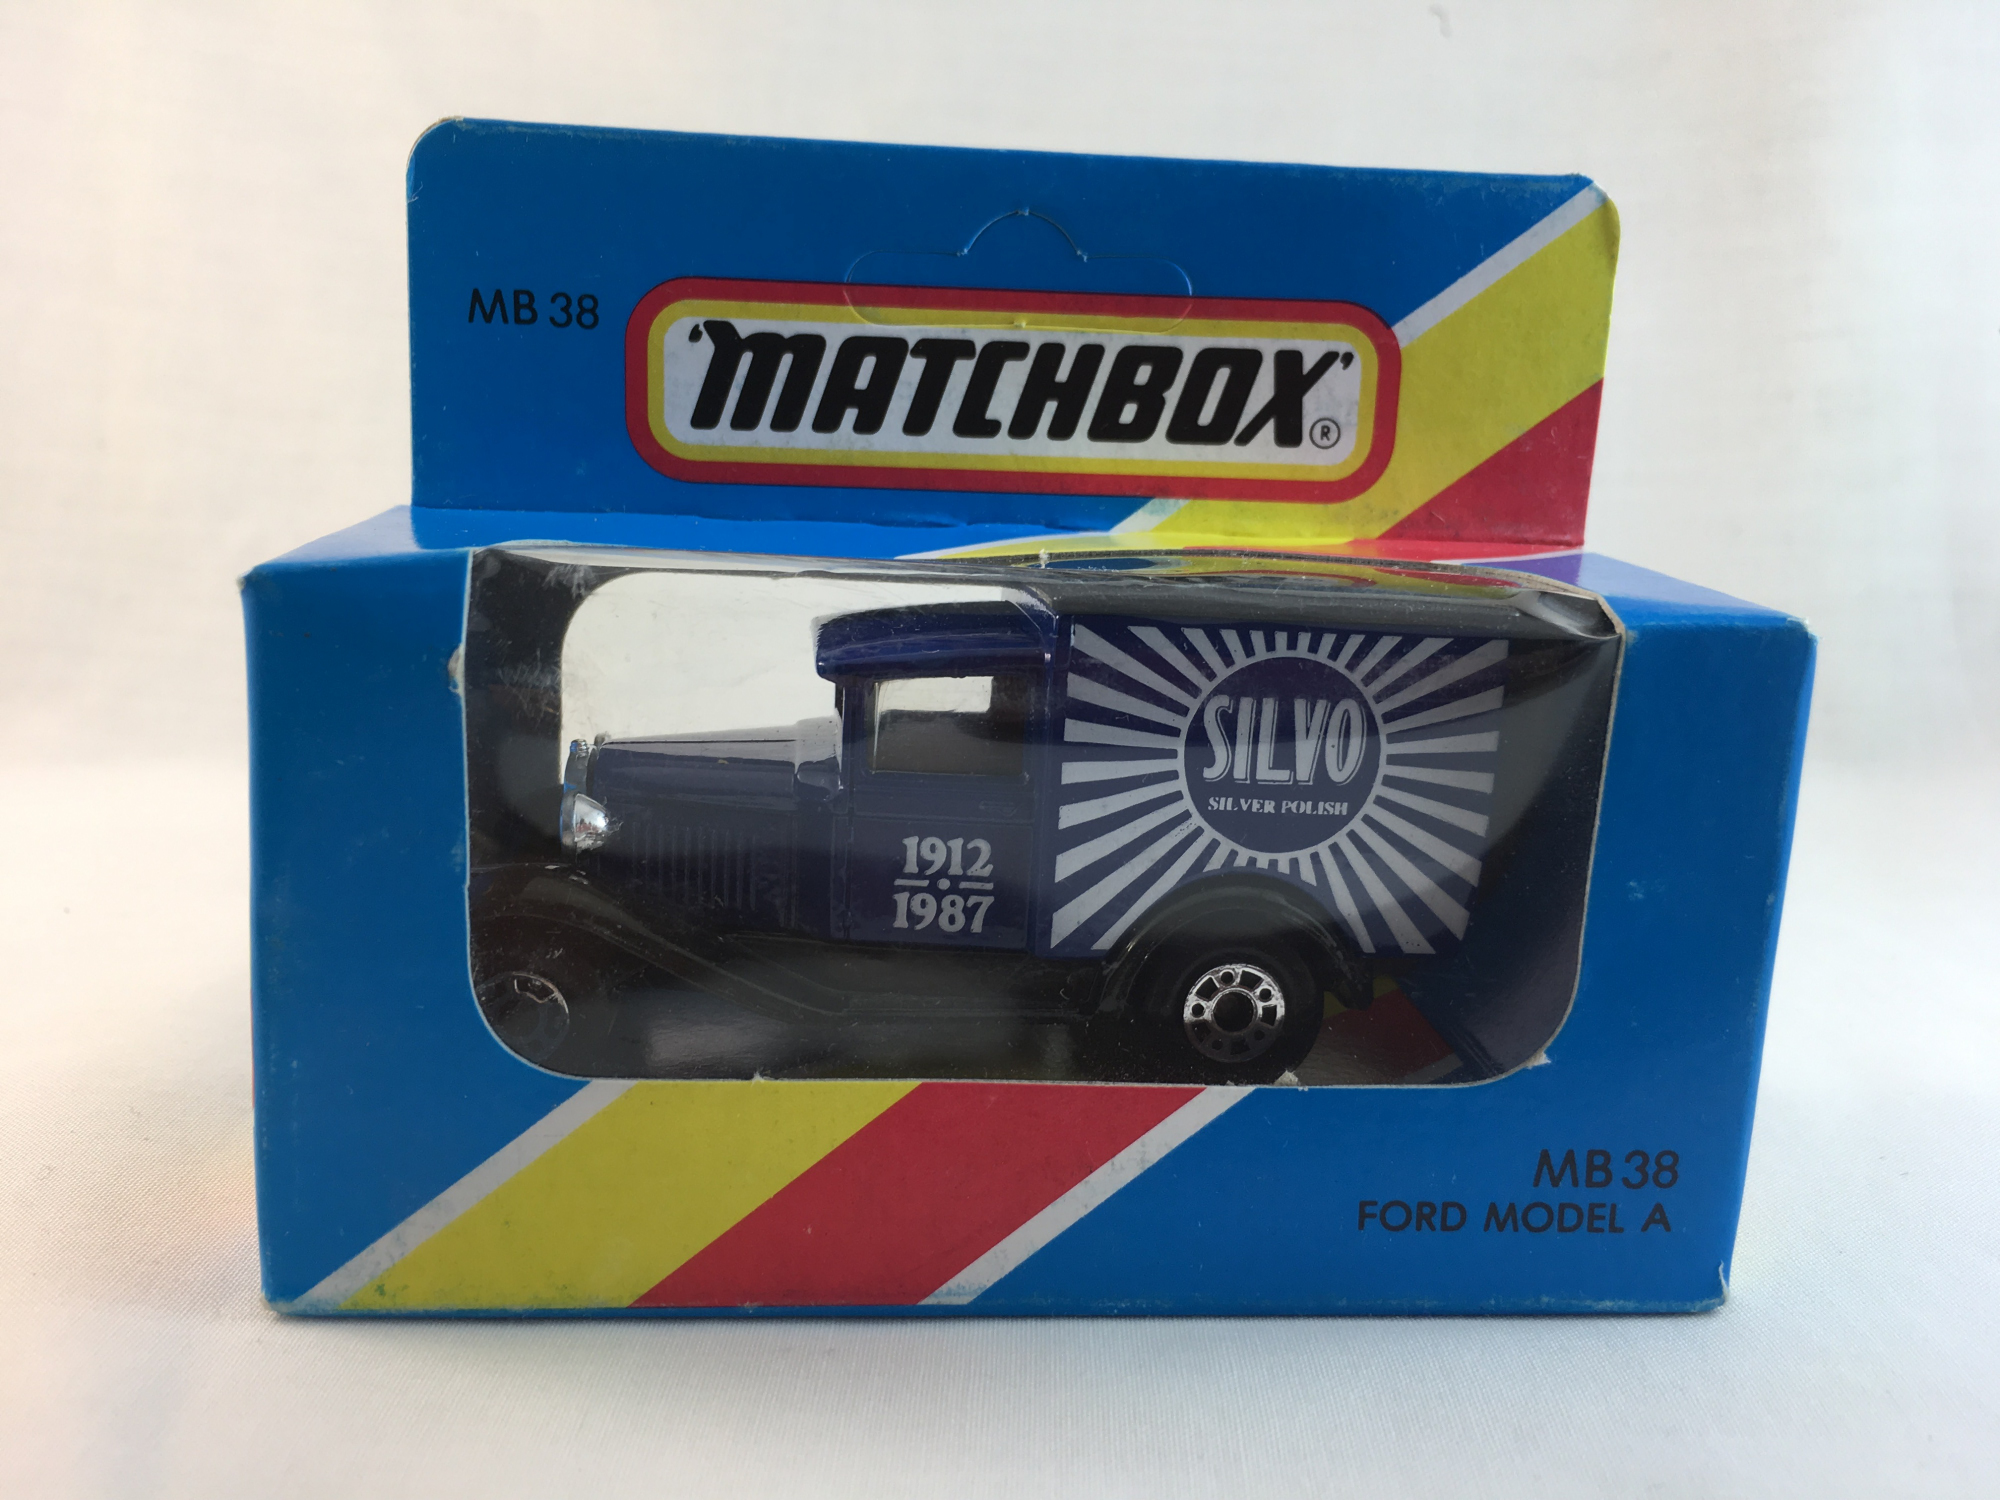 Matchbox-Ford Model A (MB 38 Silvo)